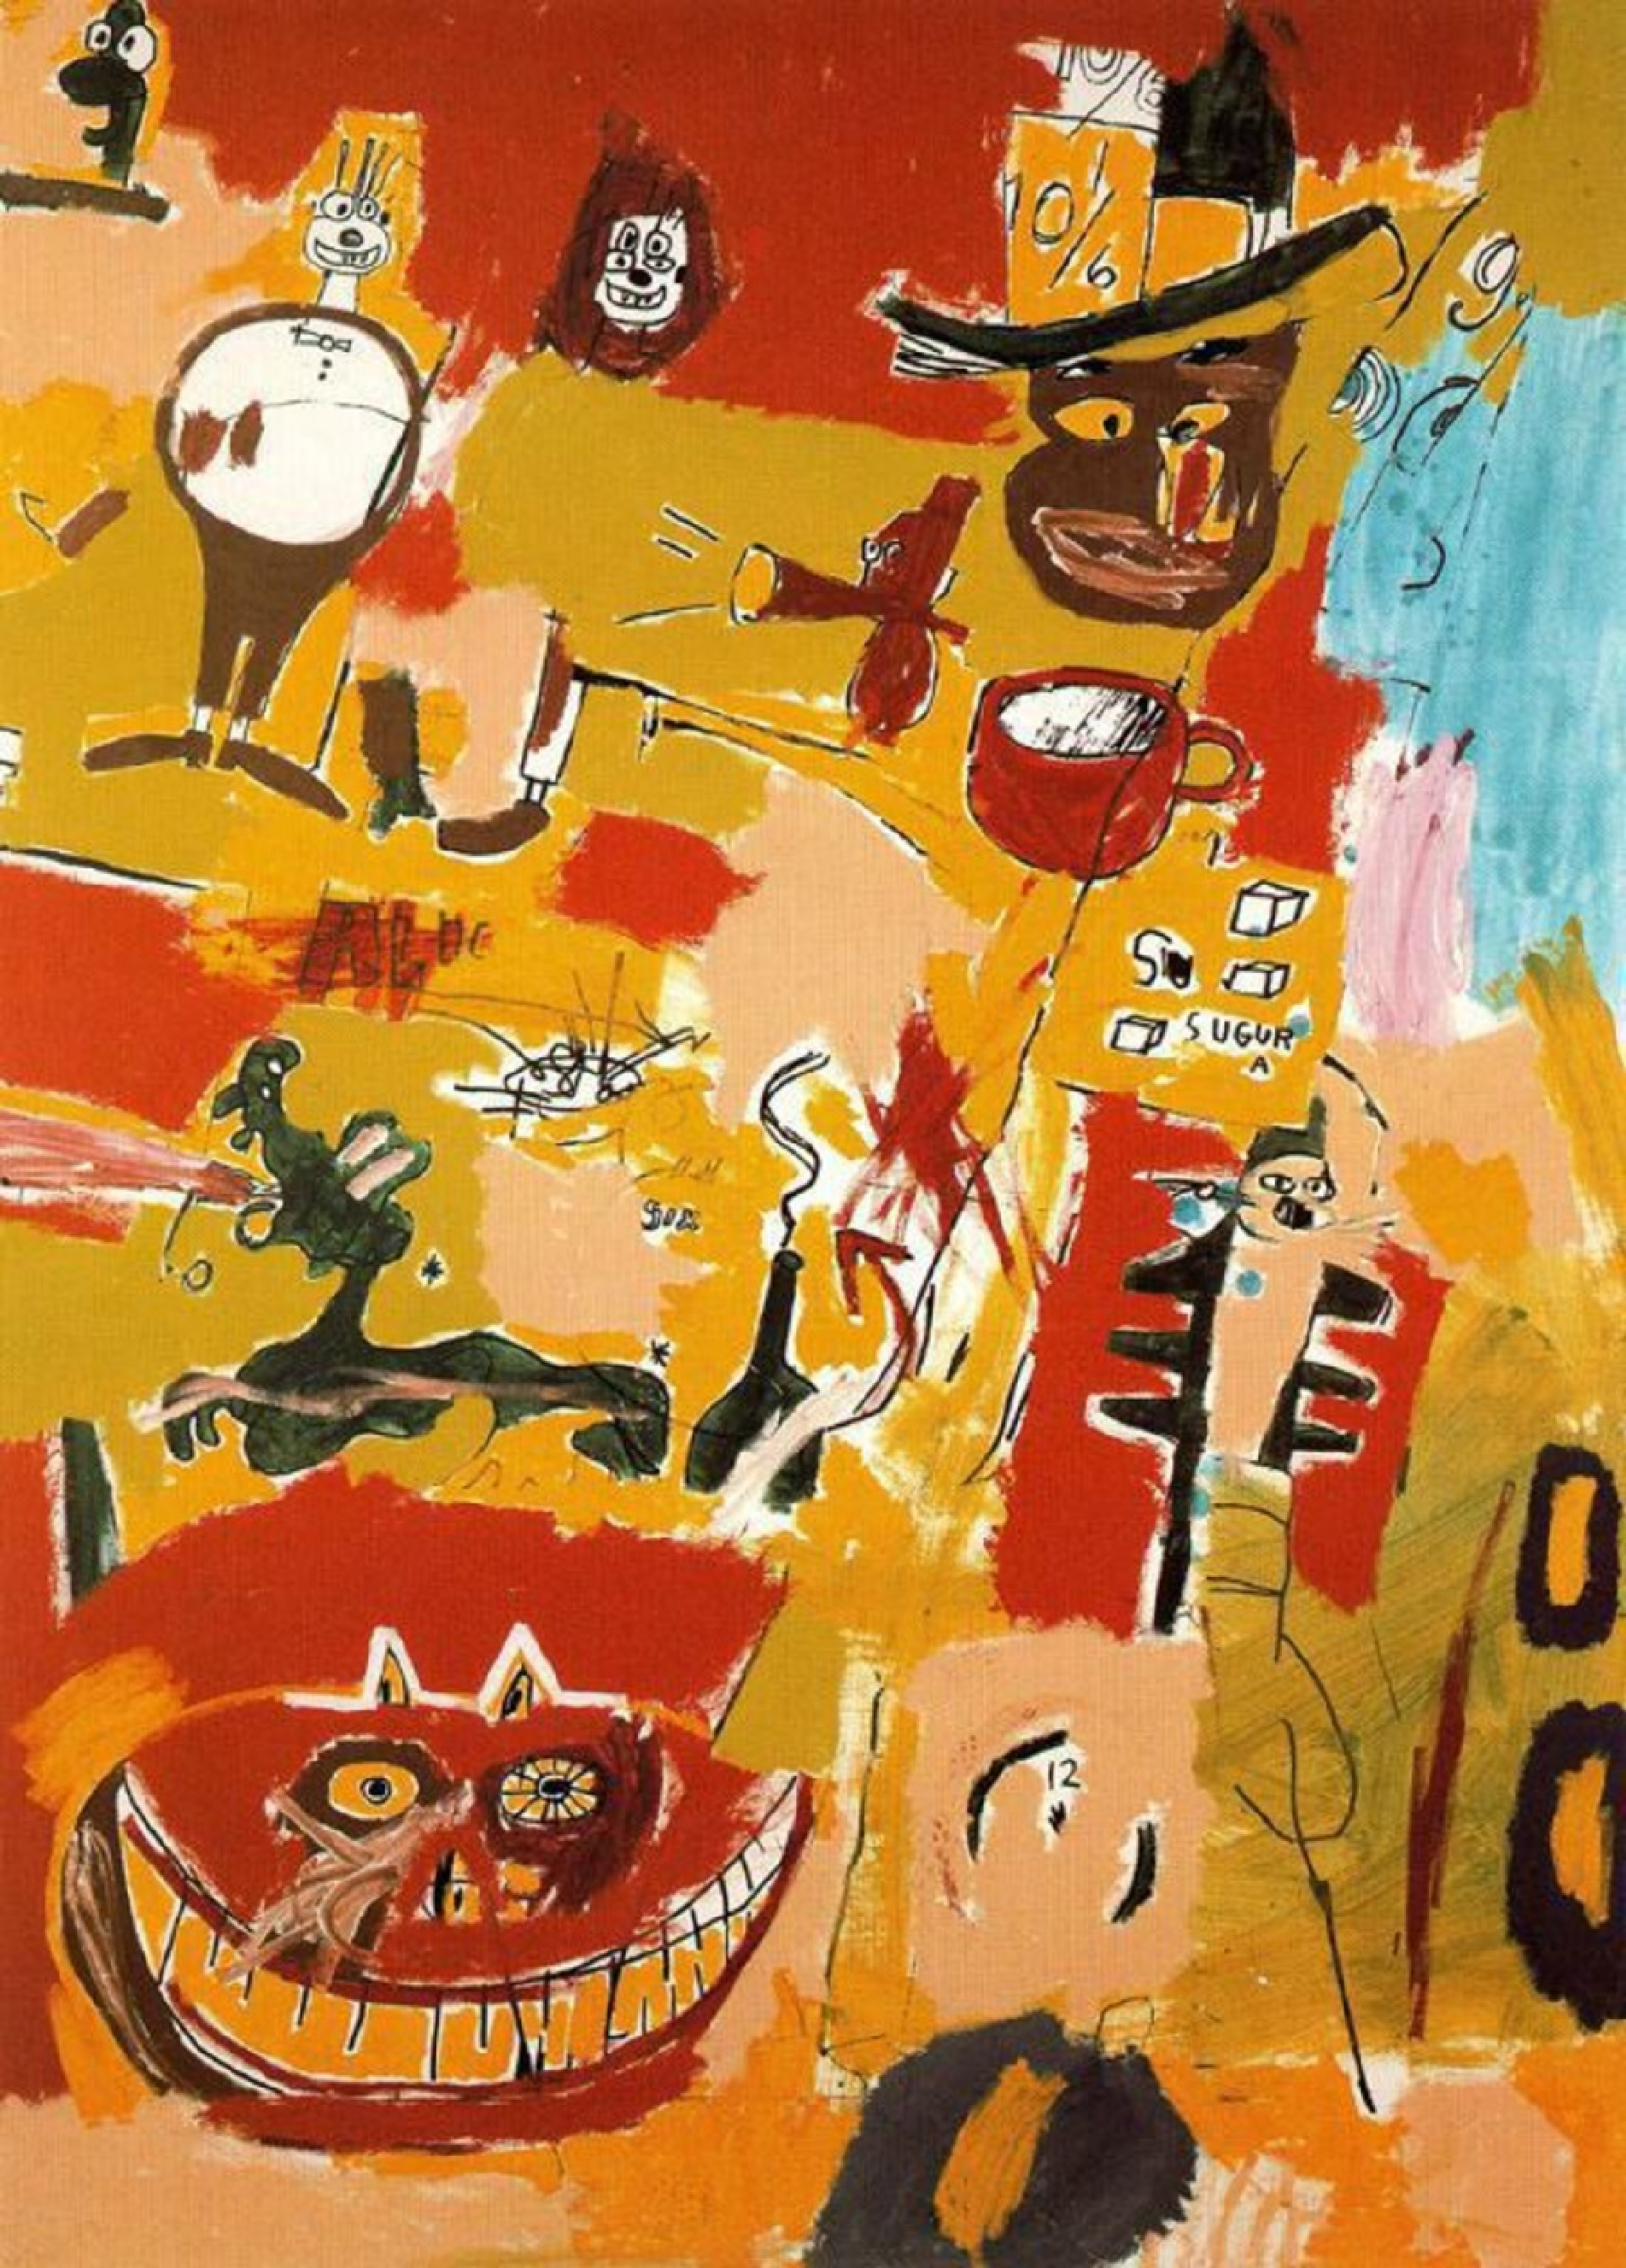 The Wine Of Babylon (Вино Вавилона), 1984. Жан-Мишель Баския (Jean-Michel Basquiat) - американский художник. Неоэкспрессионизм